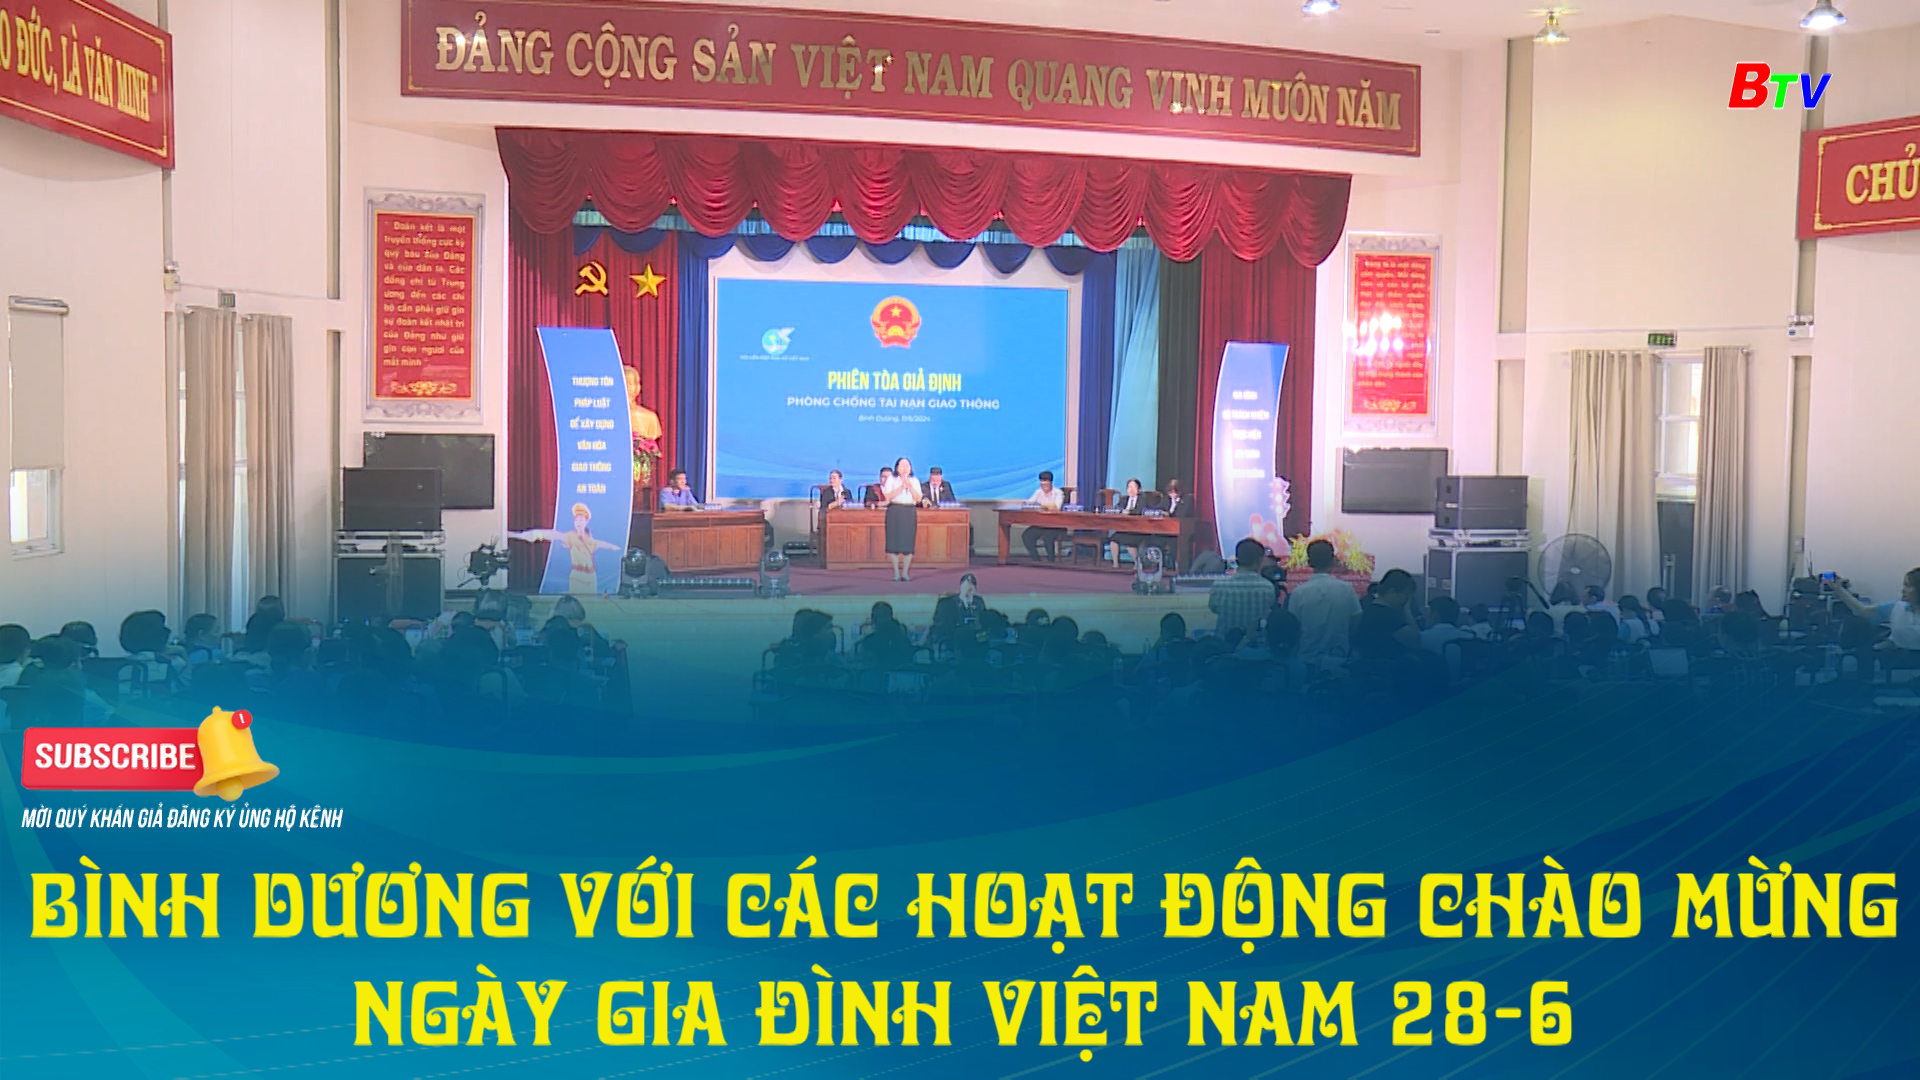 Bình Dương với các hoạt động chào mừng ngày gia đình Việt Nam 28-6